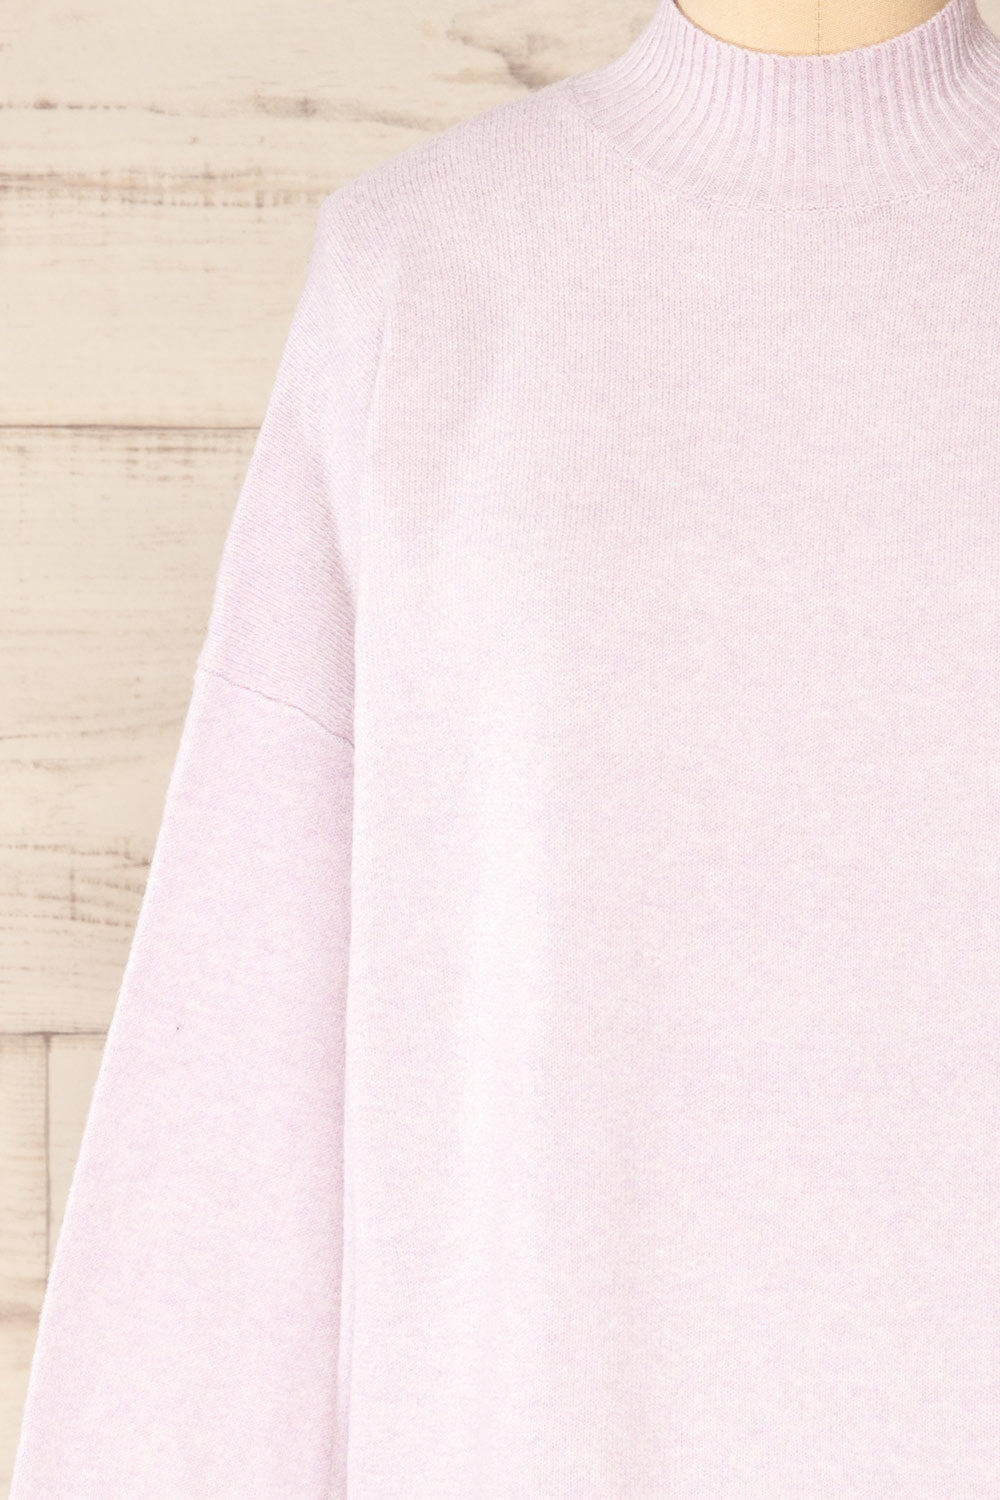 Eris Lavender Mock Neck Sweater | La petite garçonne front close-up